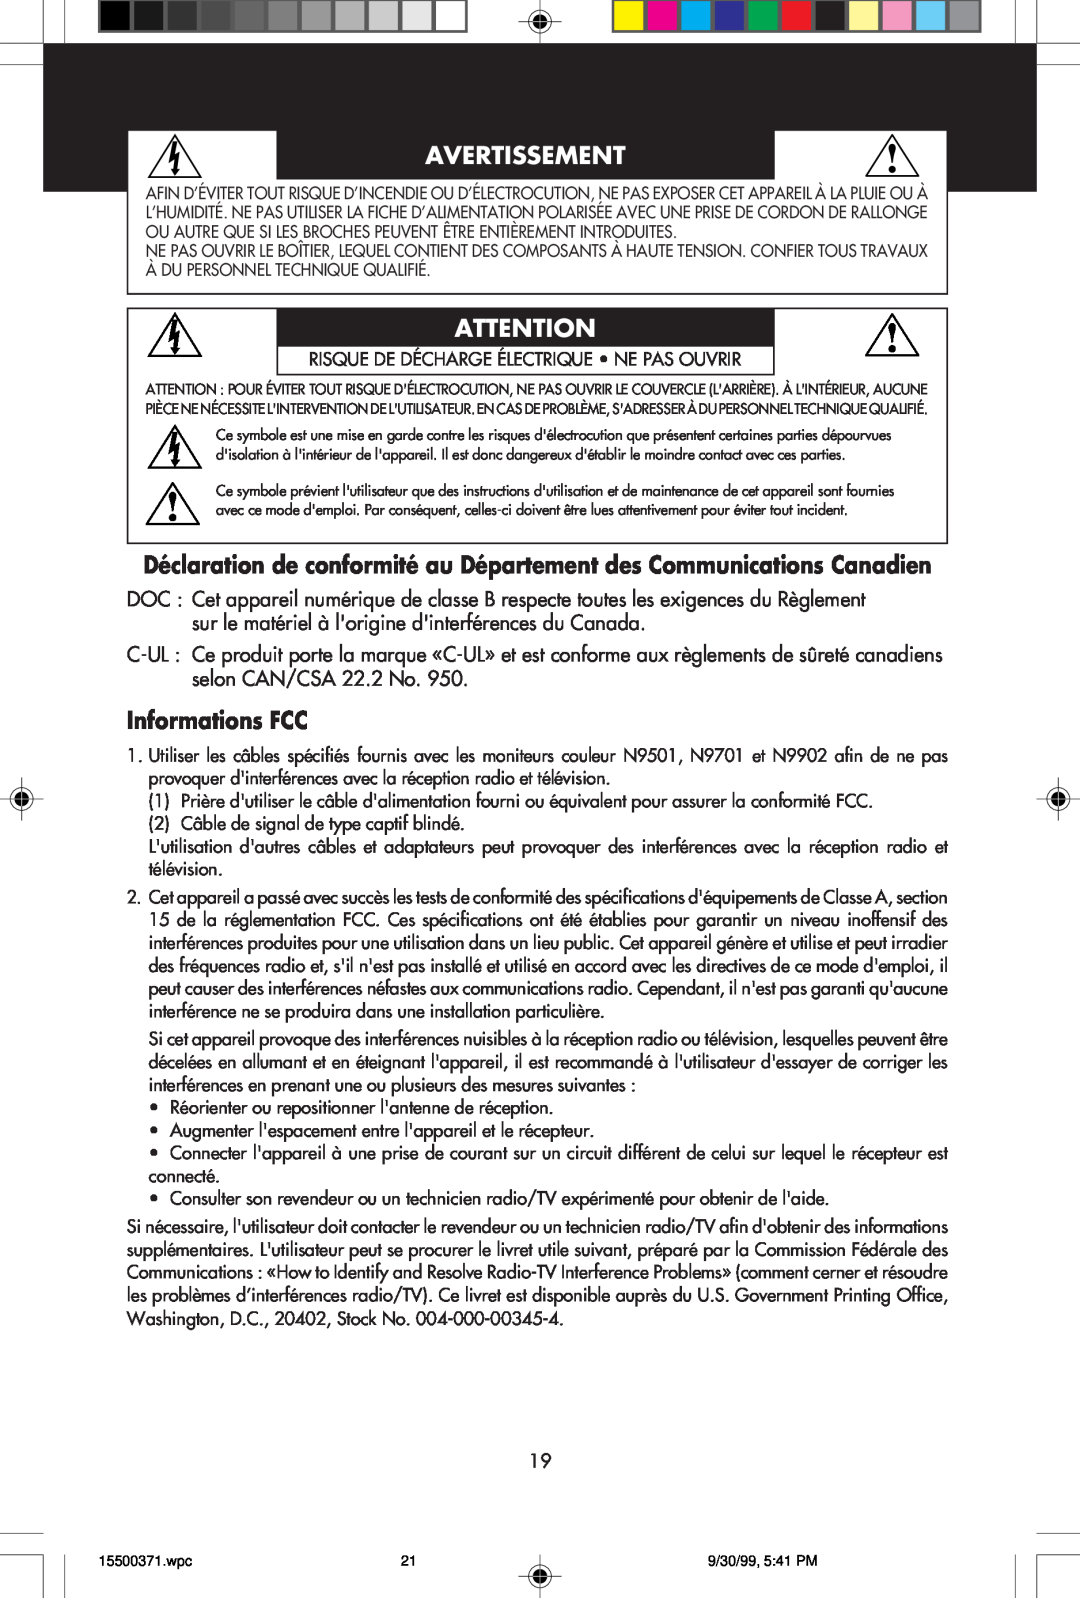 NEC N9701, N9501 Avertissement, Déclaration de conformité au Département des Communications Canadien, Informations FCC 